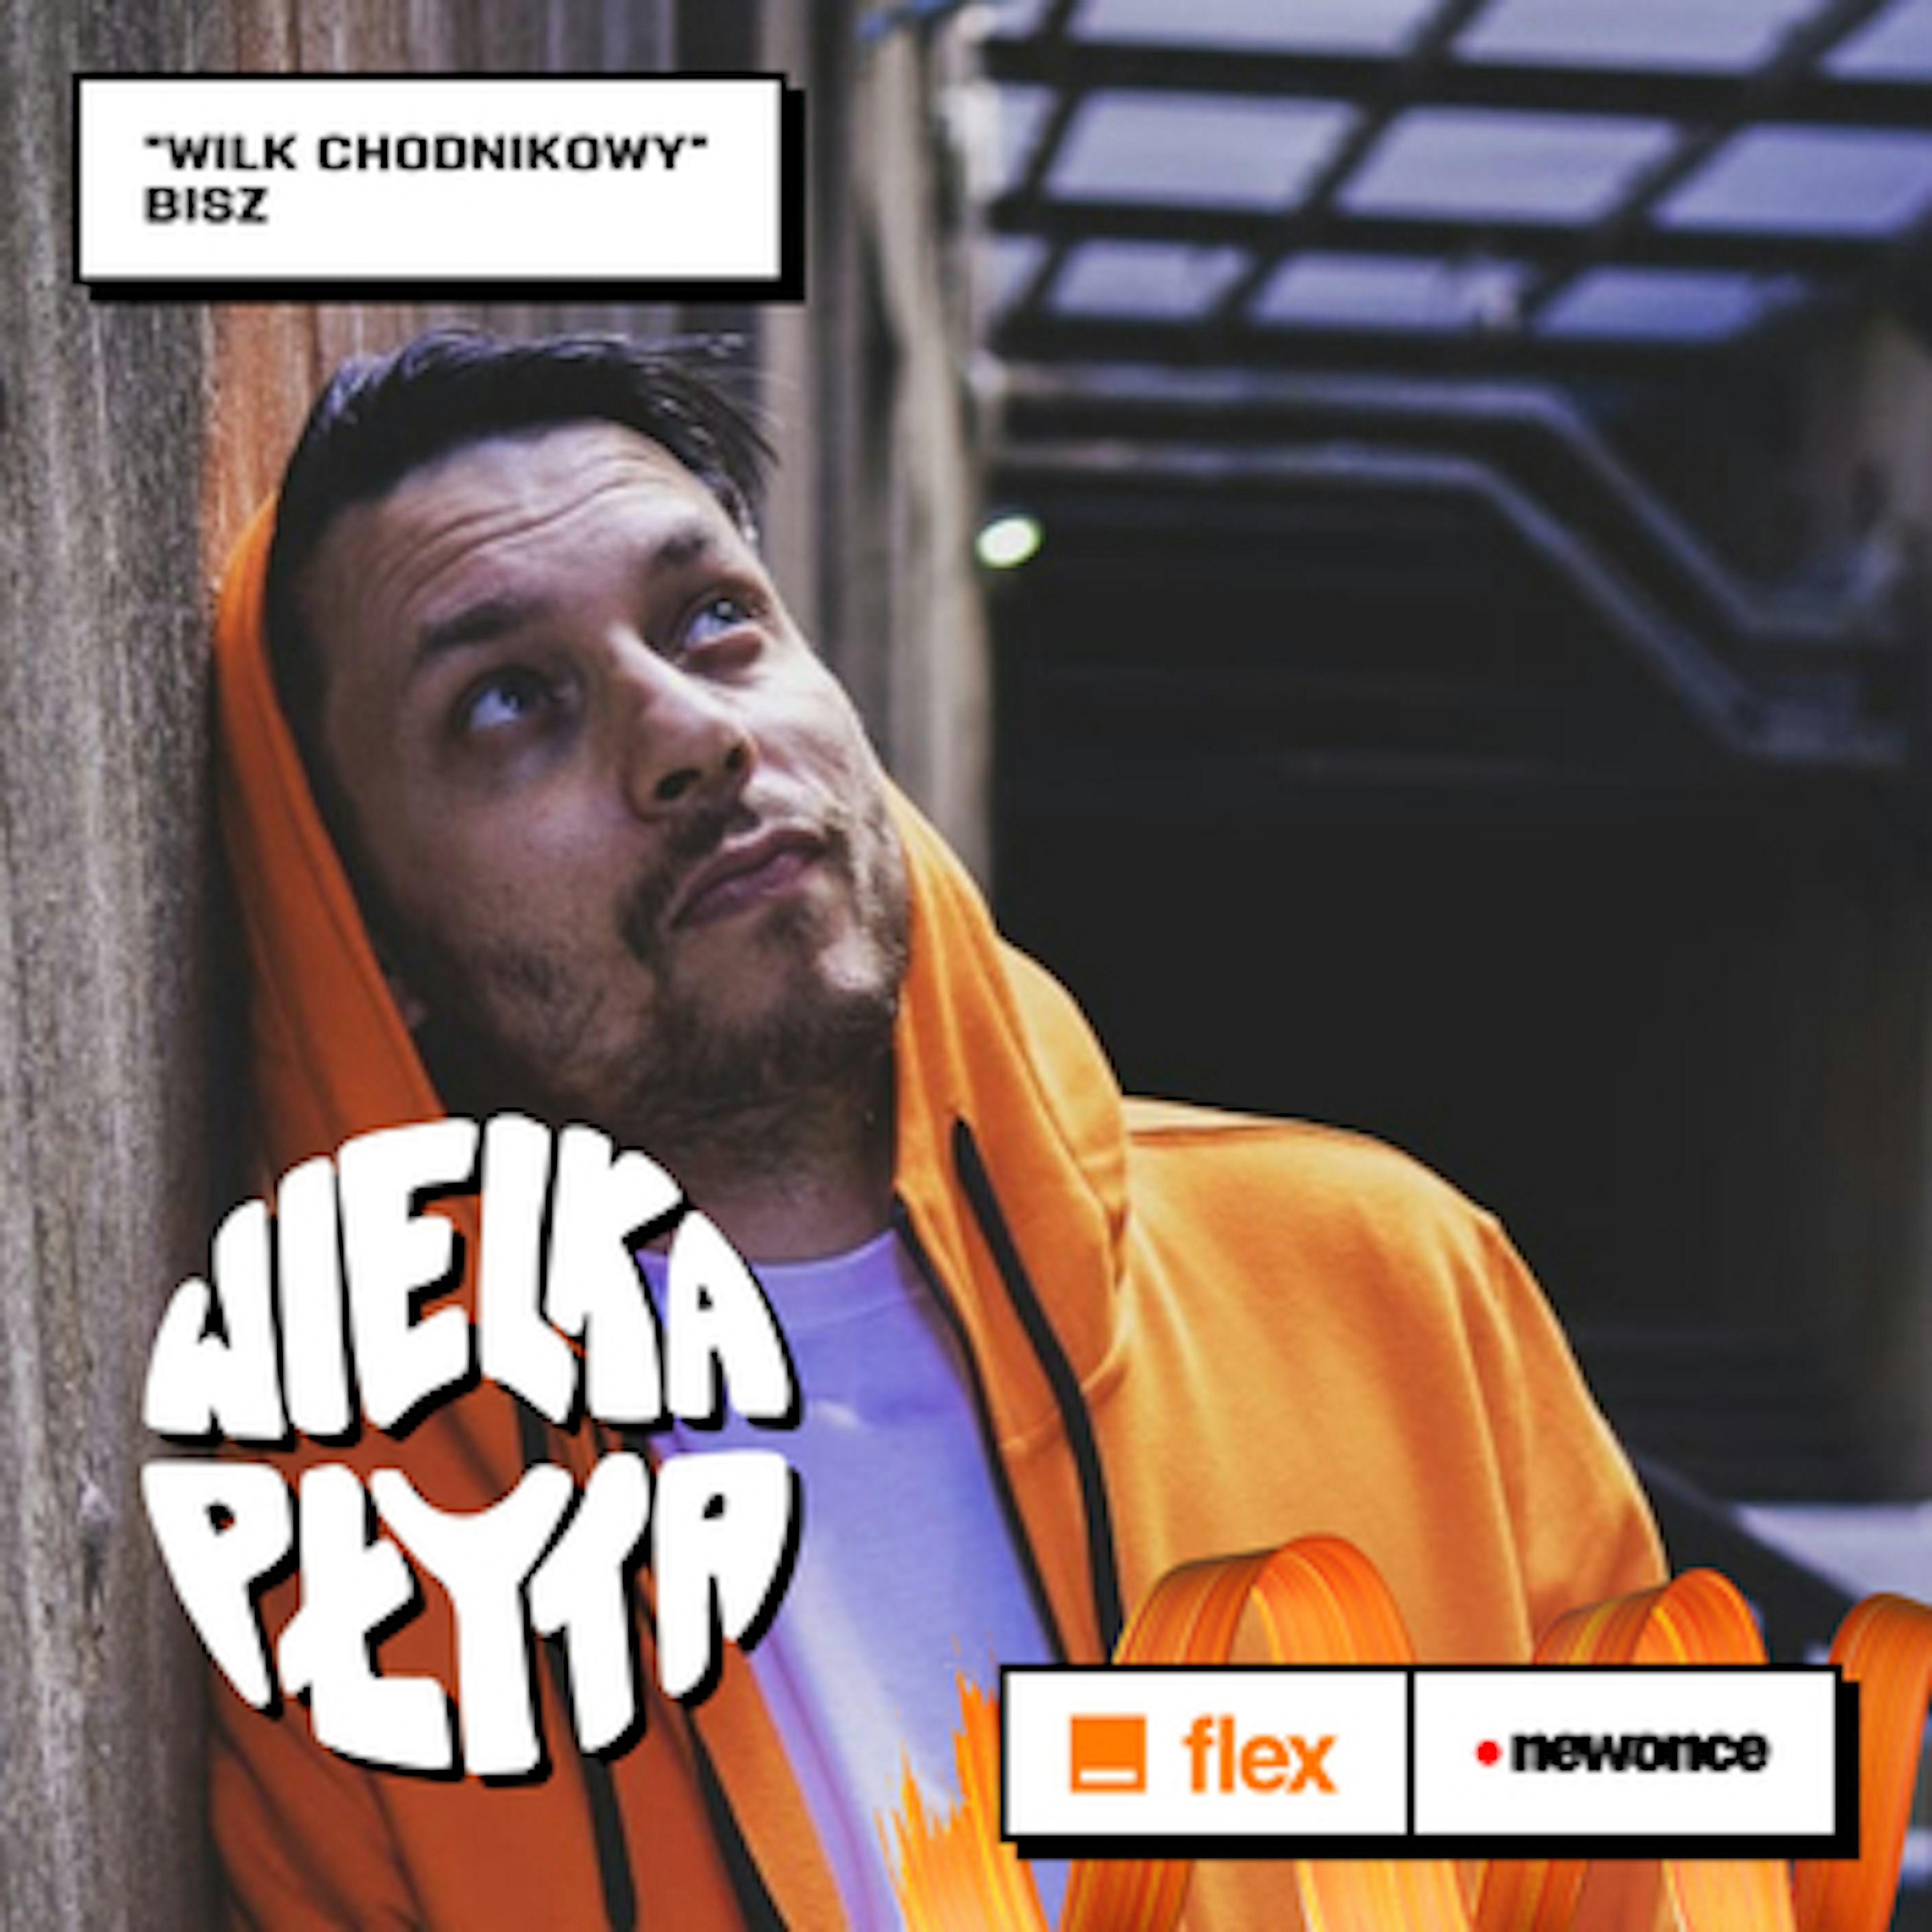 Wielka Płyta powered by Orange Flex  - Być albo nie być Bisza - Wilk chodnikowy.